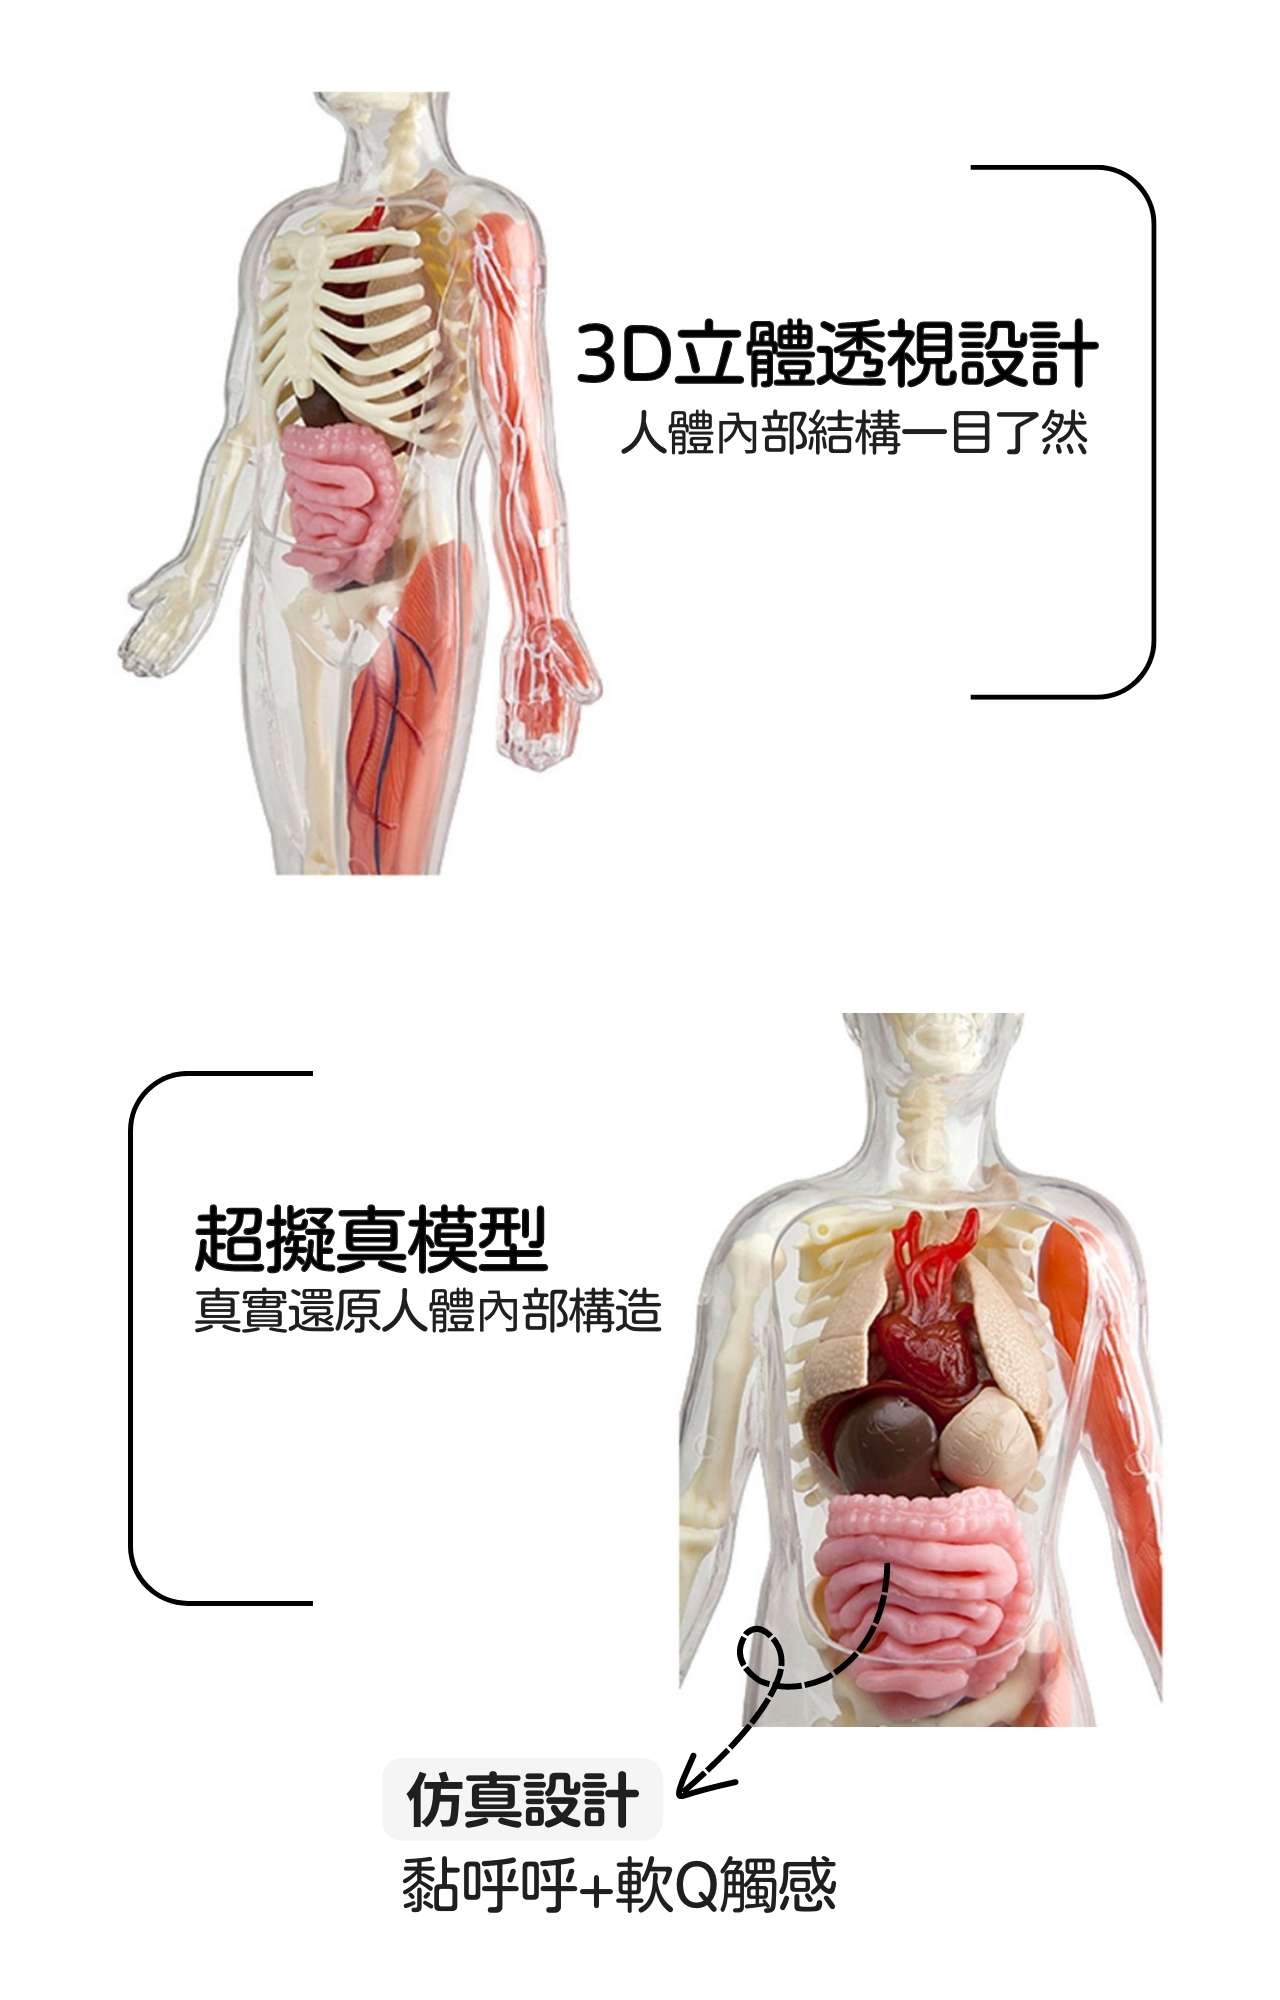 美國SmartLab 超擬真人體模型遊戲組_Squishy Human Body_產品說明 (2)